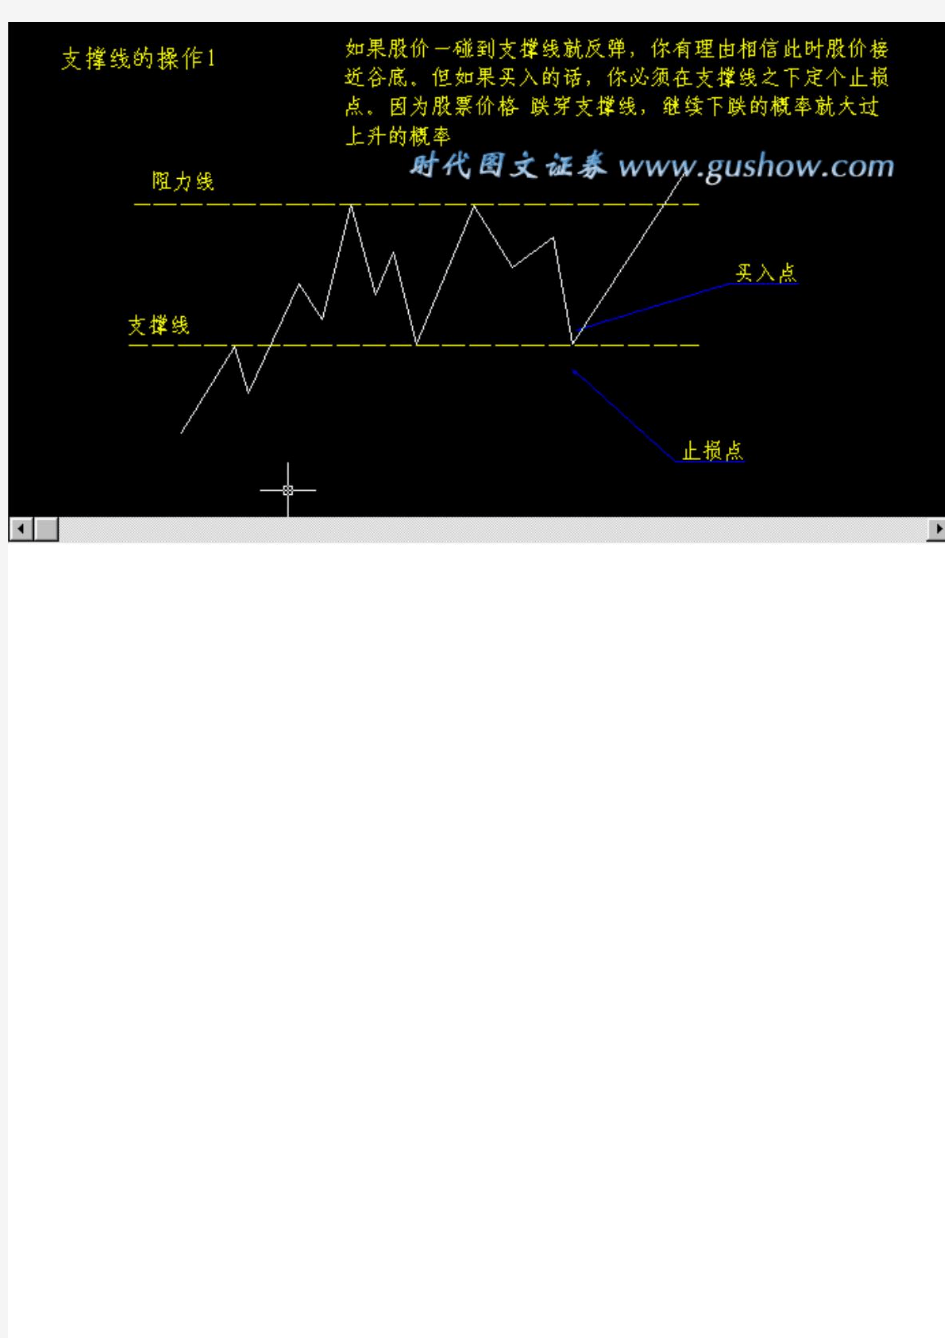 短线暴涨教材教你如何看股票k线图